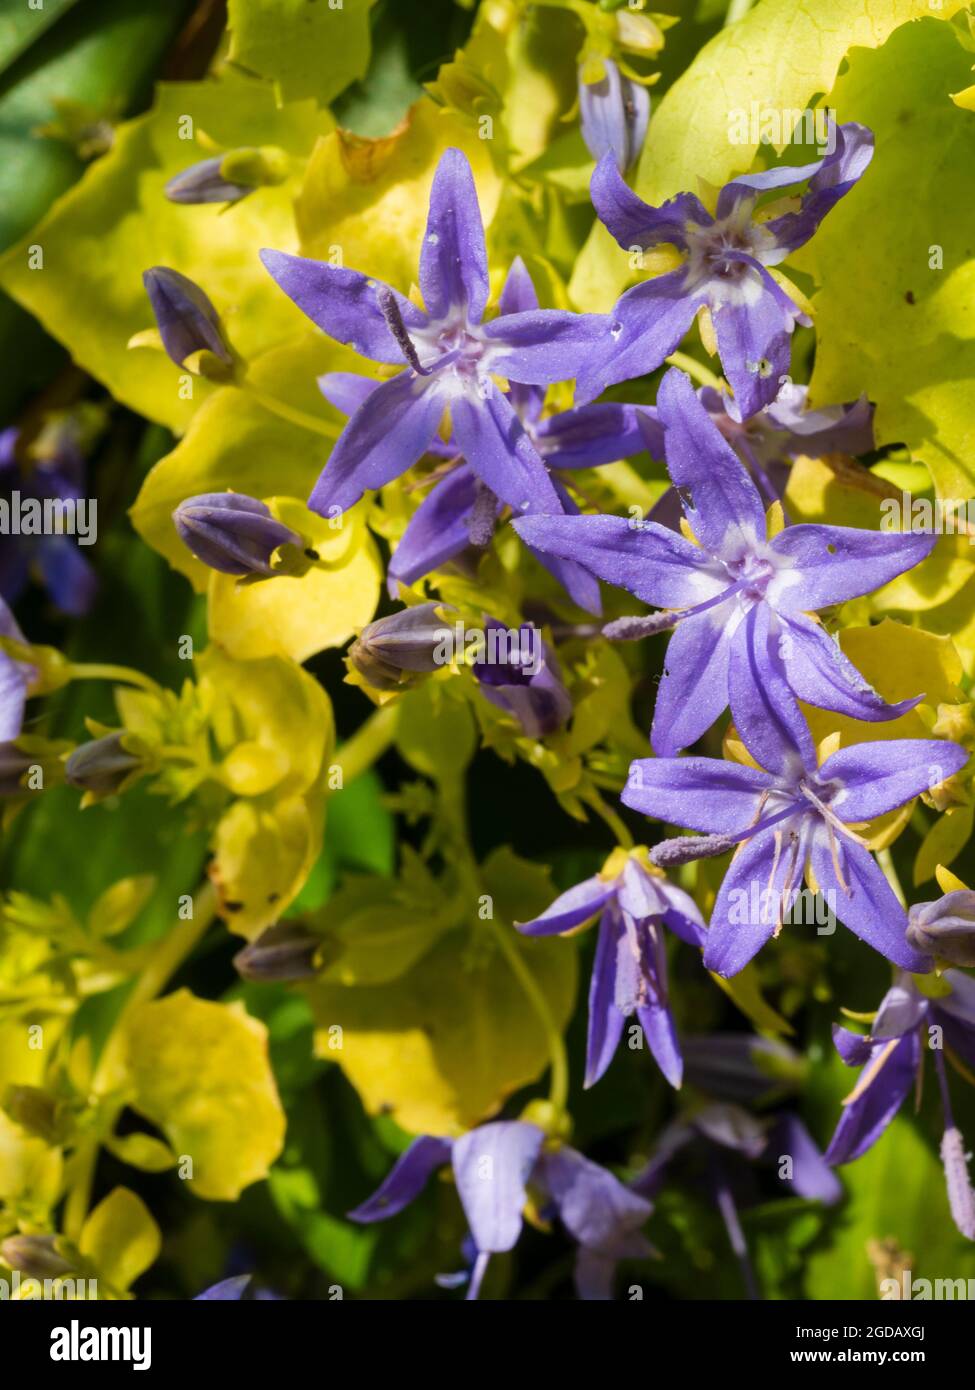 Feuillage jaune et fleurs bleues de la plante vivace compacte florissante du milieu de l'été, Campanula garganica 'Dockson's Gold' Banque D'Images